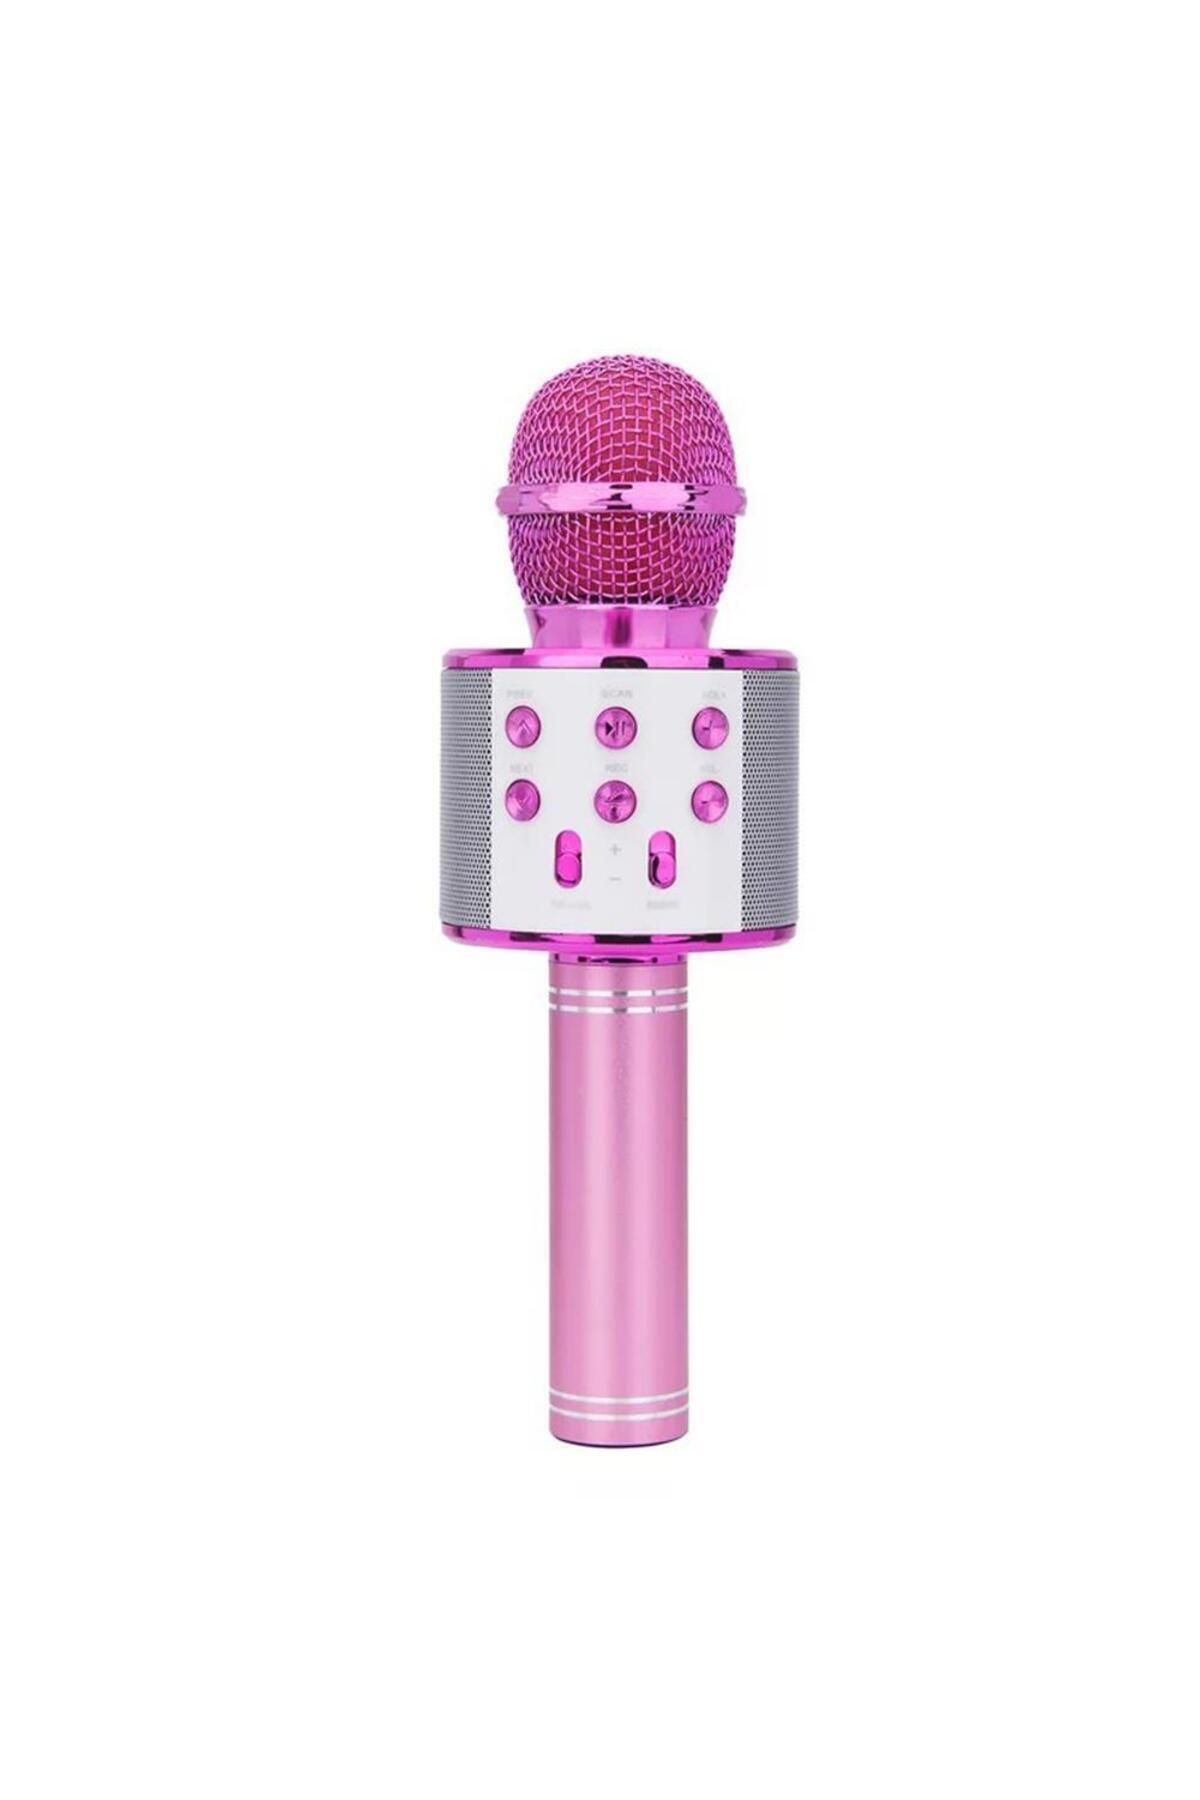 Subzero Güven Ws-858 Karaoke Mikrofon Aux Usb Ve Sd Kart Girişli Bluetooth Hoparlör Gold